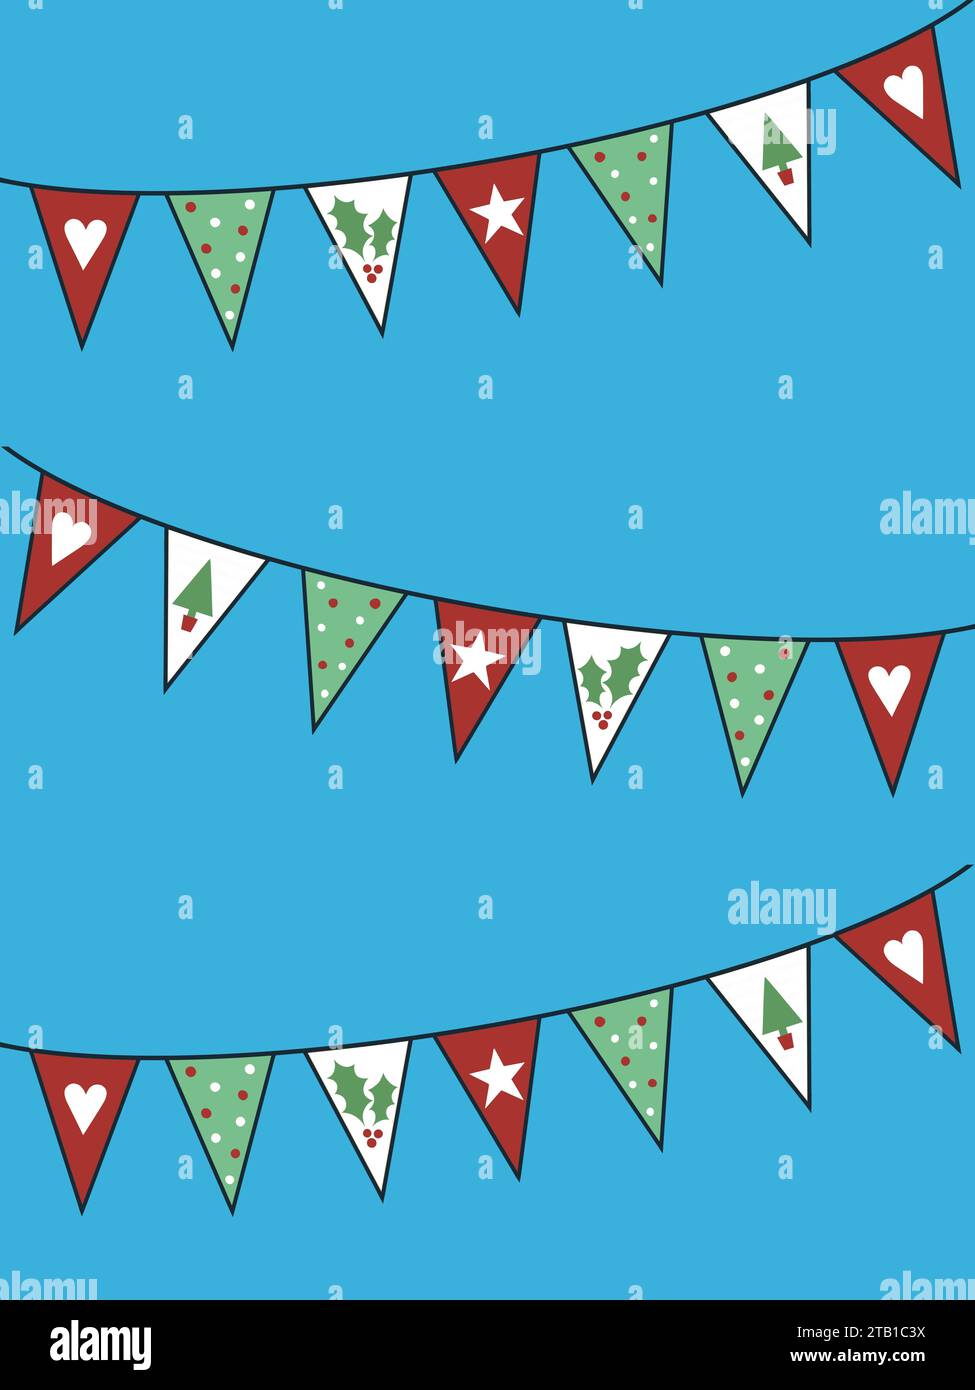 Bande dessinée amusante de Noël. Les fanions triangulaires contiennent des pois, du houx, des coeurs, des étoiles et des motifs d'arbre de Noël. Motif festif coloré. Banque D'Images